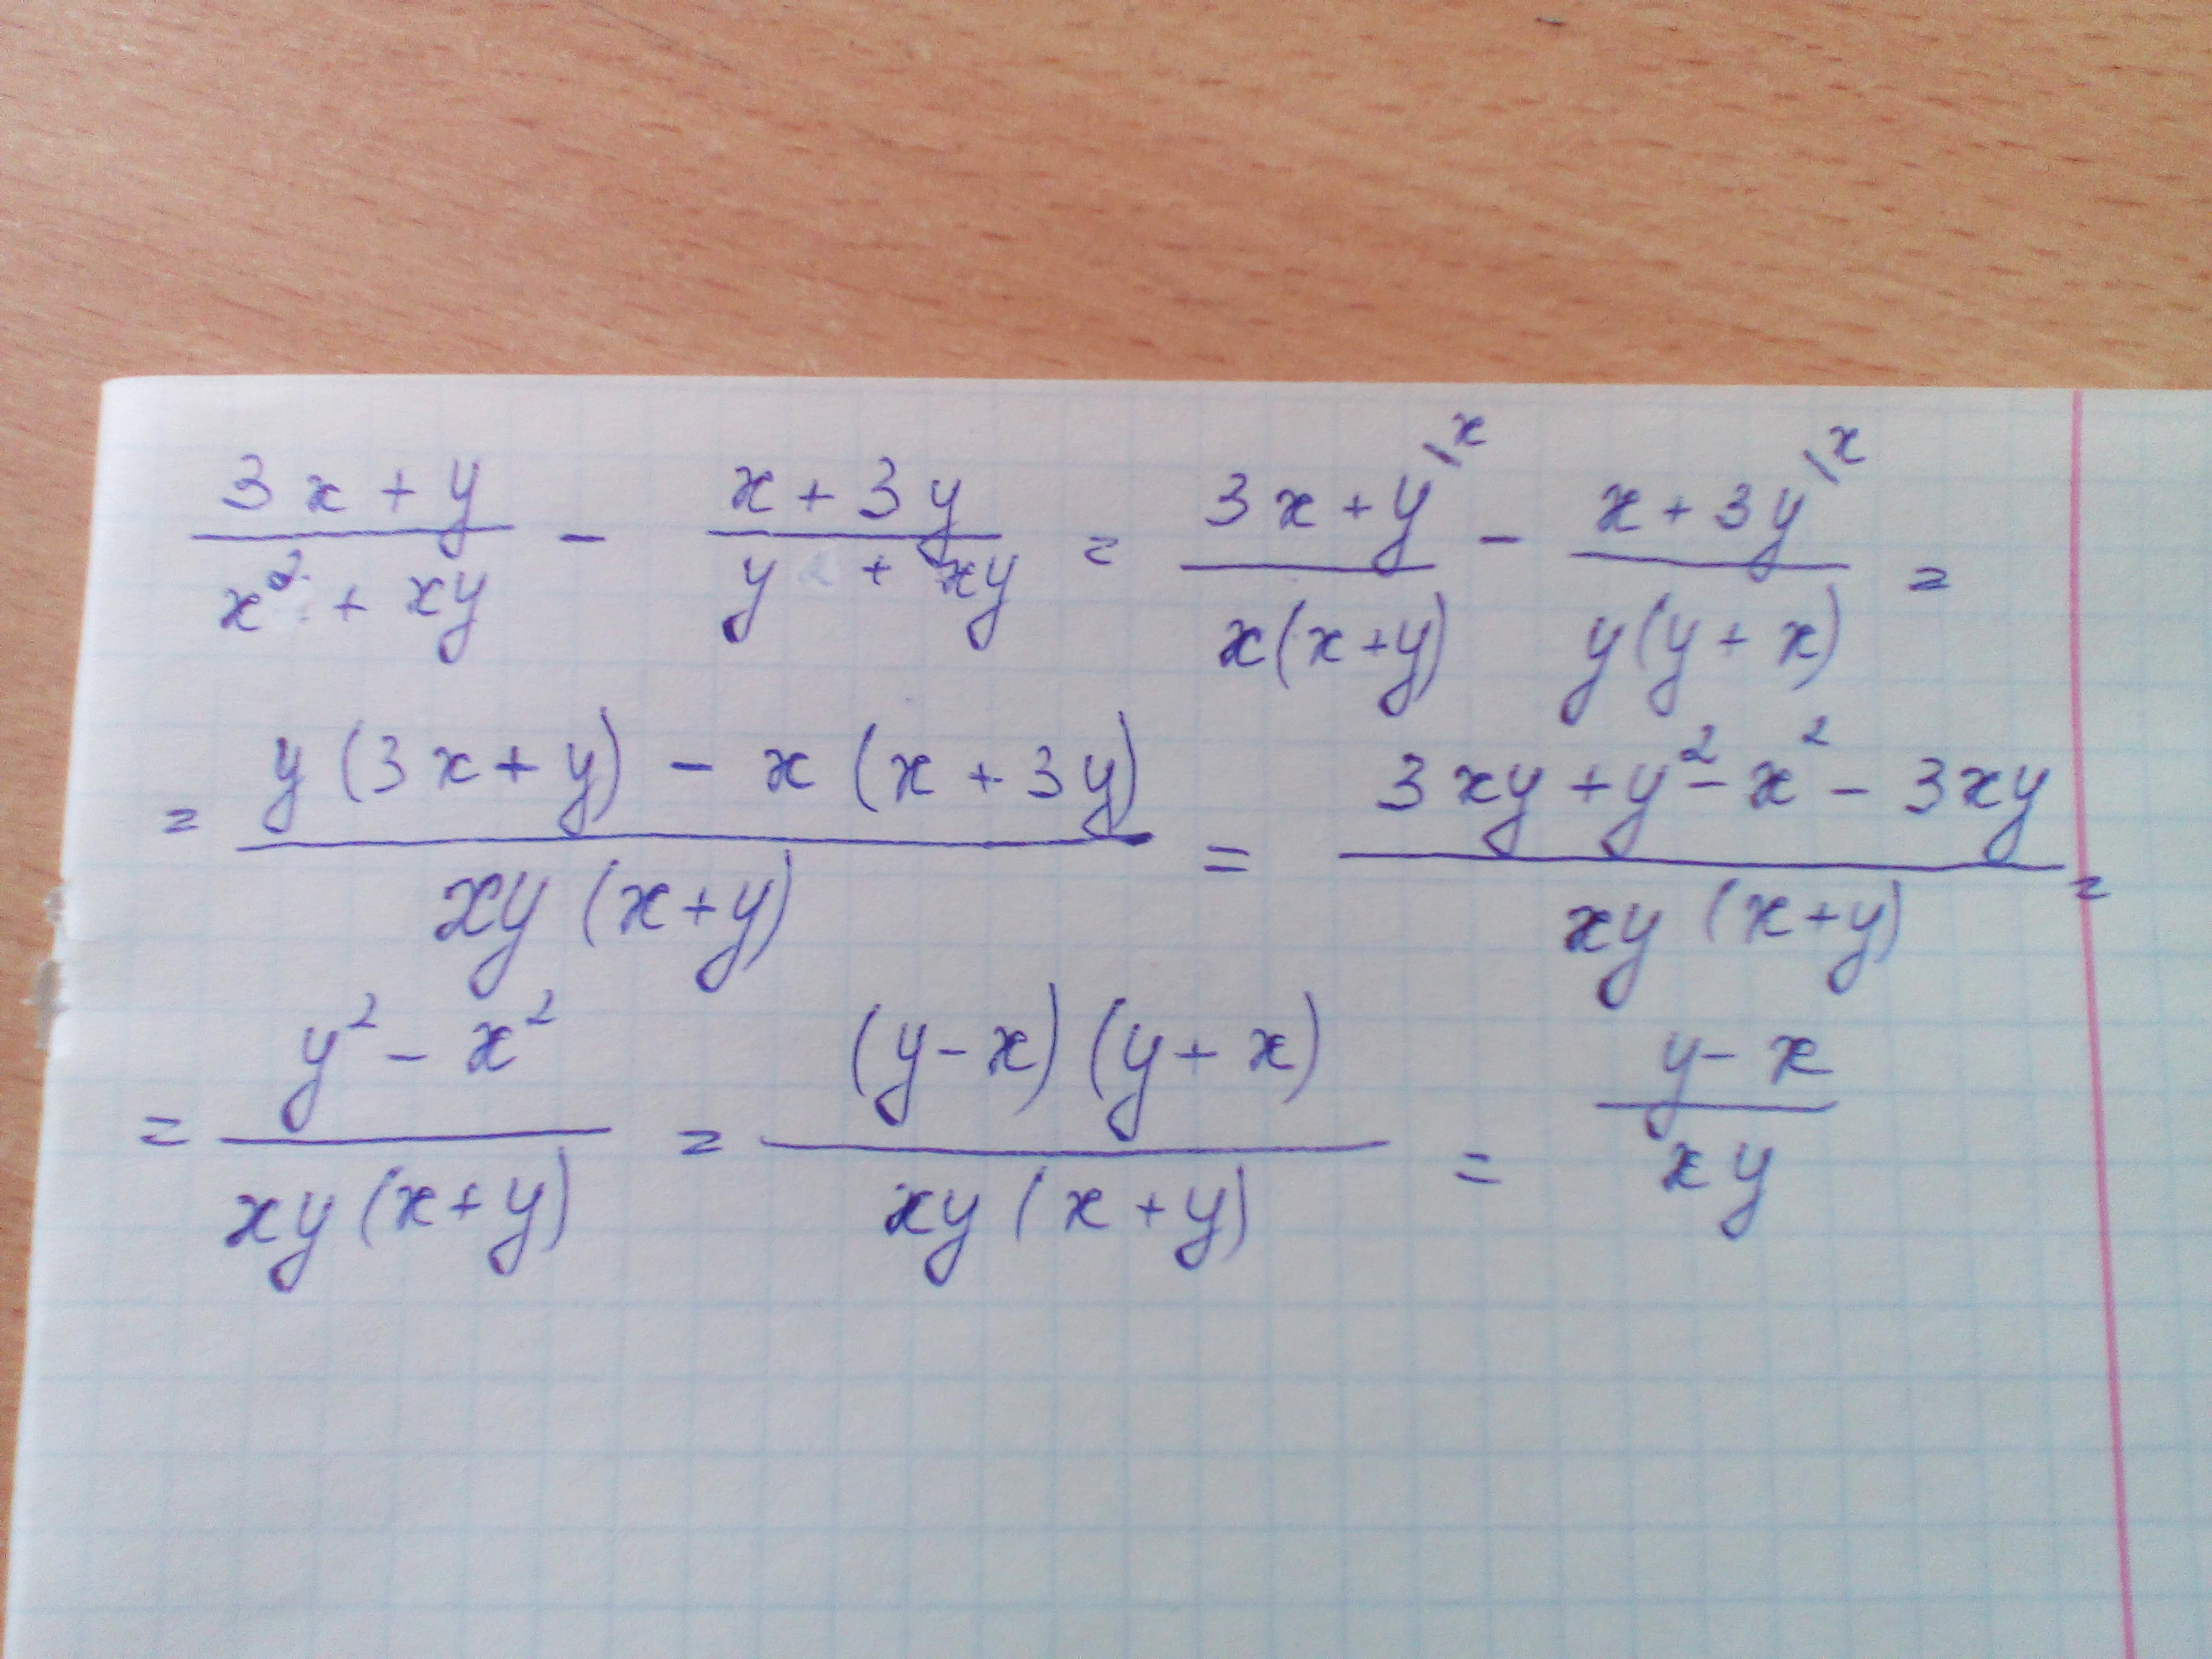 2x y 11 3x 5y 3. X 2 +Y 2 =2x+2y+XY. Упростить выражение x^2-y^2/x^2-2xy+y^2. 3x+y/x2+XY-X+3y/y2+XY. 3x+y/x2+XY-X+3y/y2+XY упростите выражение.